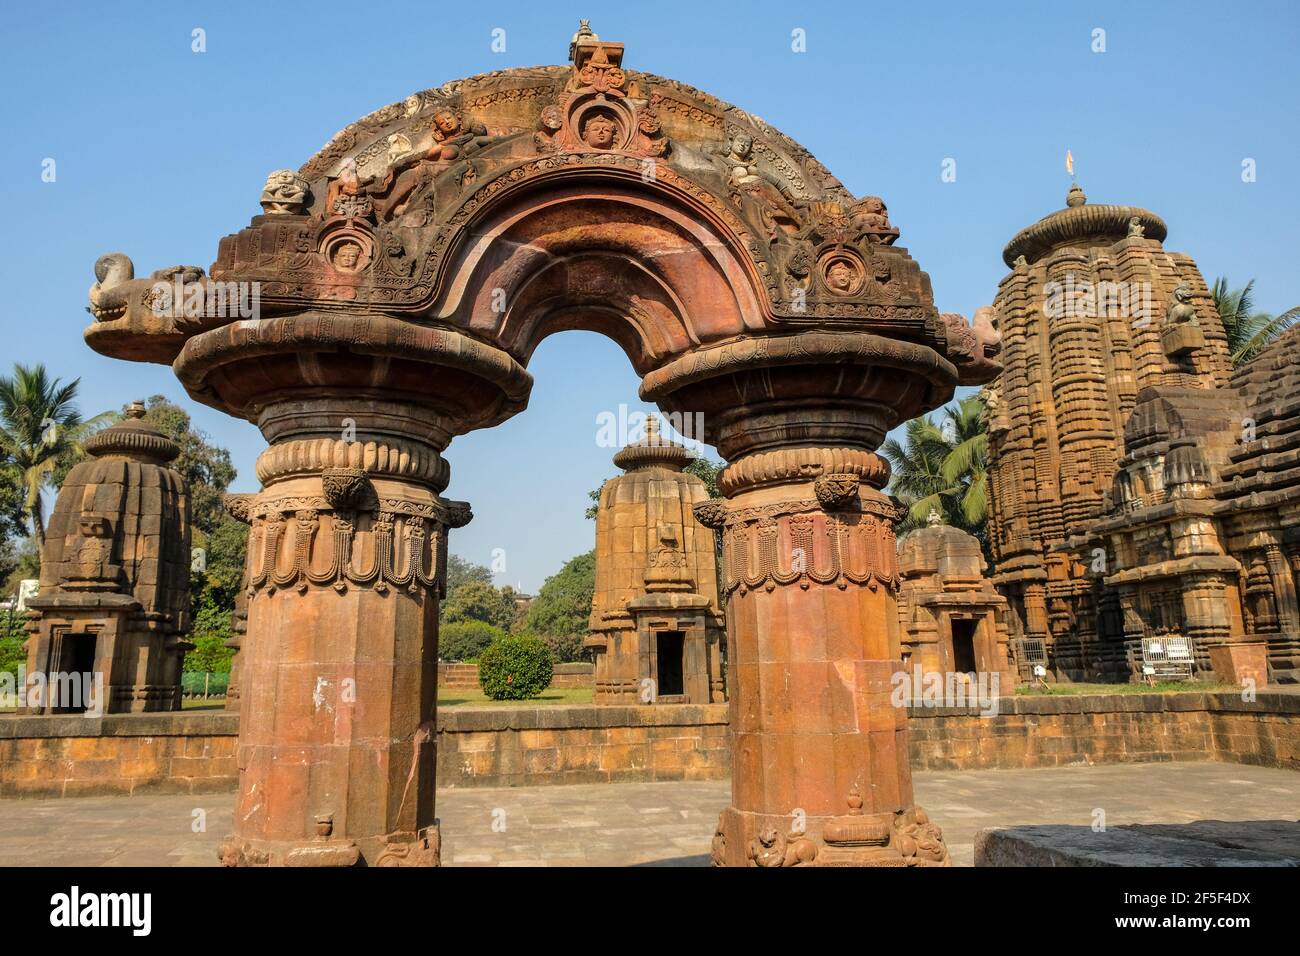 Le temple de Mukteshwar est un temple hindou du Xe siècle dédié à Shiva, situé à Bhubaneswar, Odisha, en Inde. Banque D'Images